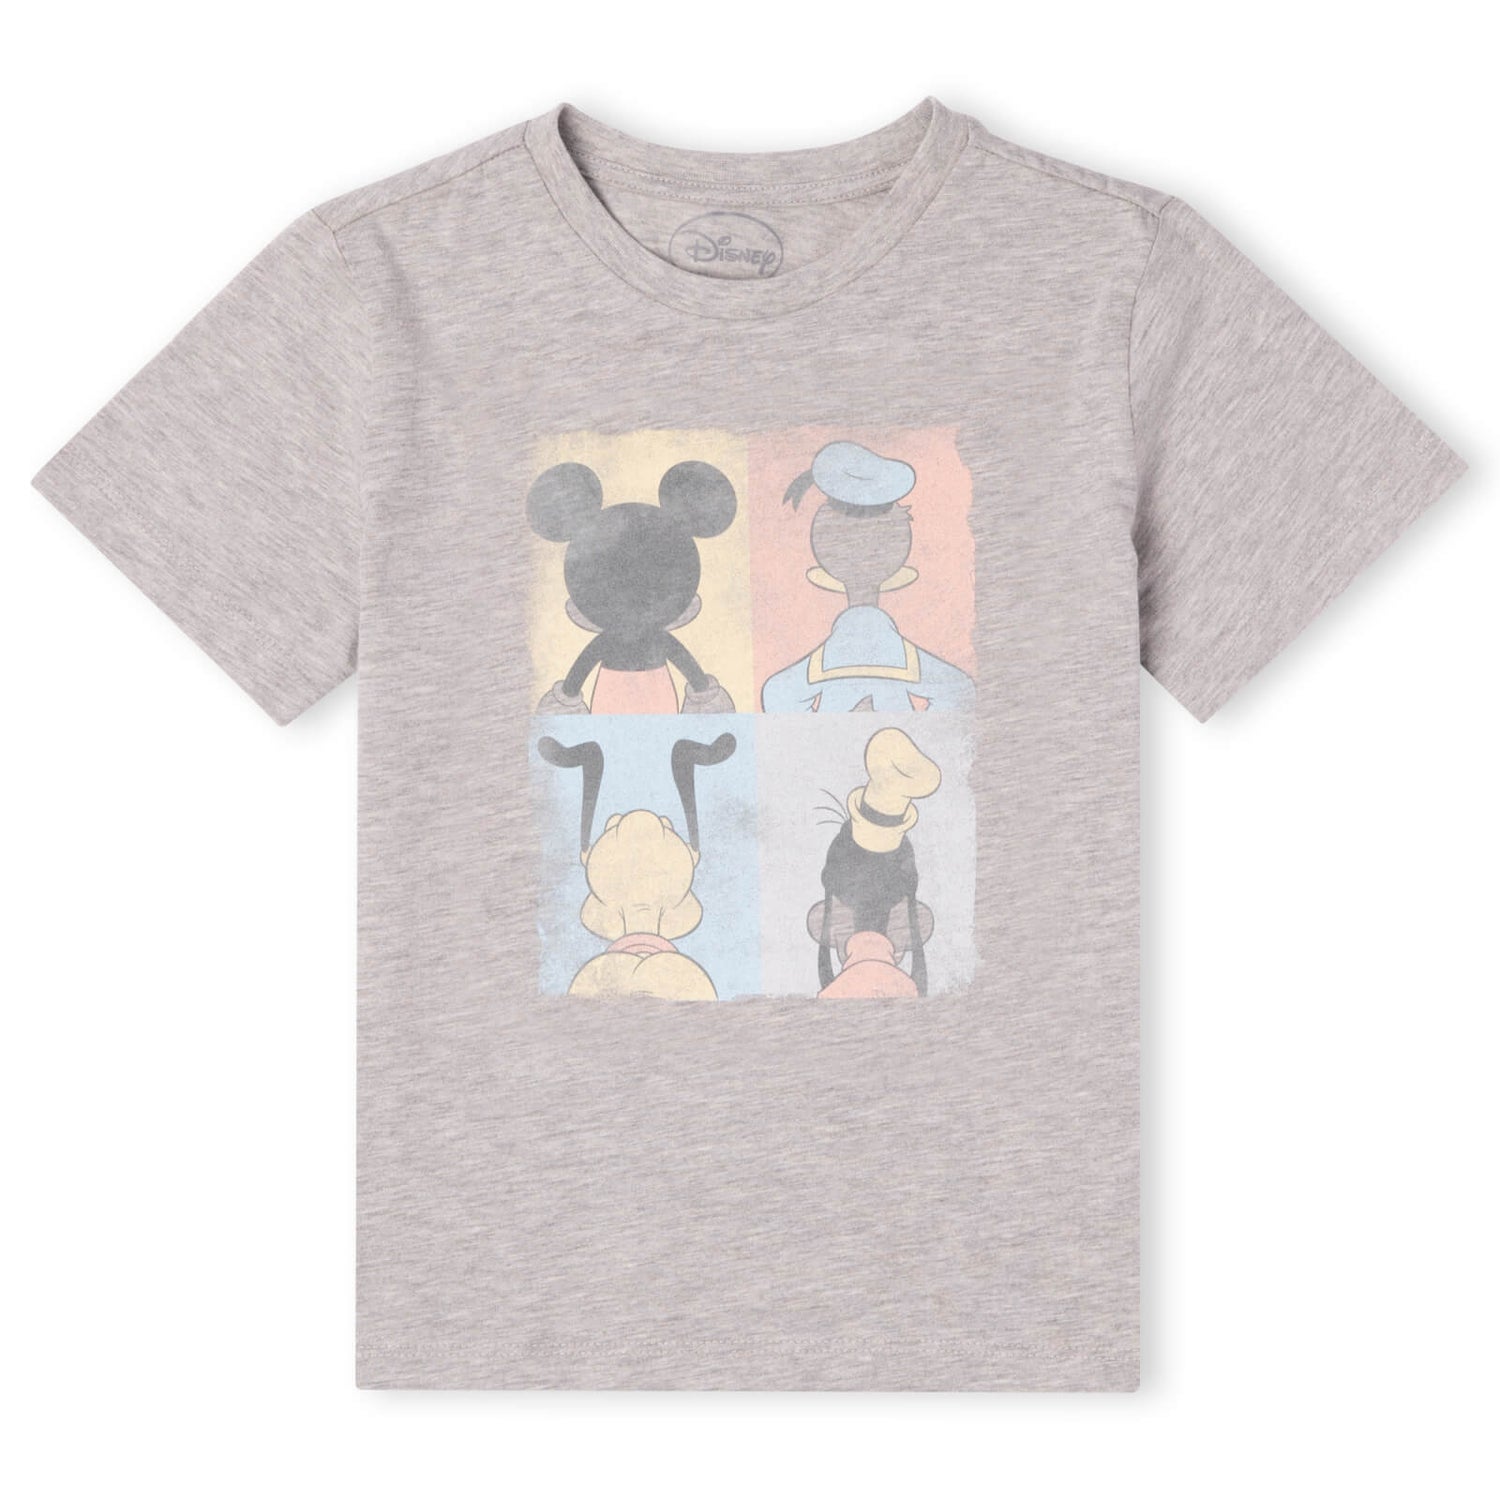 T-Shirt Enfant Disney Donald Duck Mickey Mouse Pluto Dingo - Gris